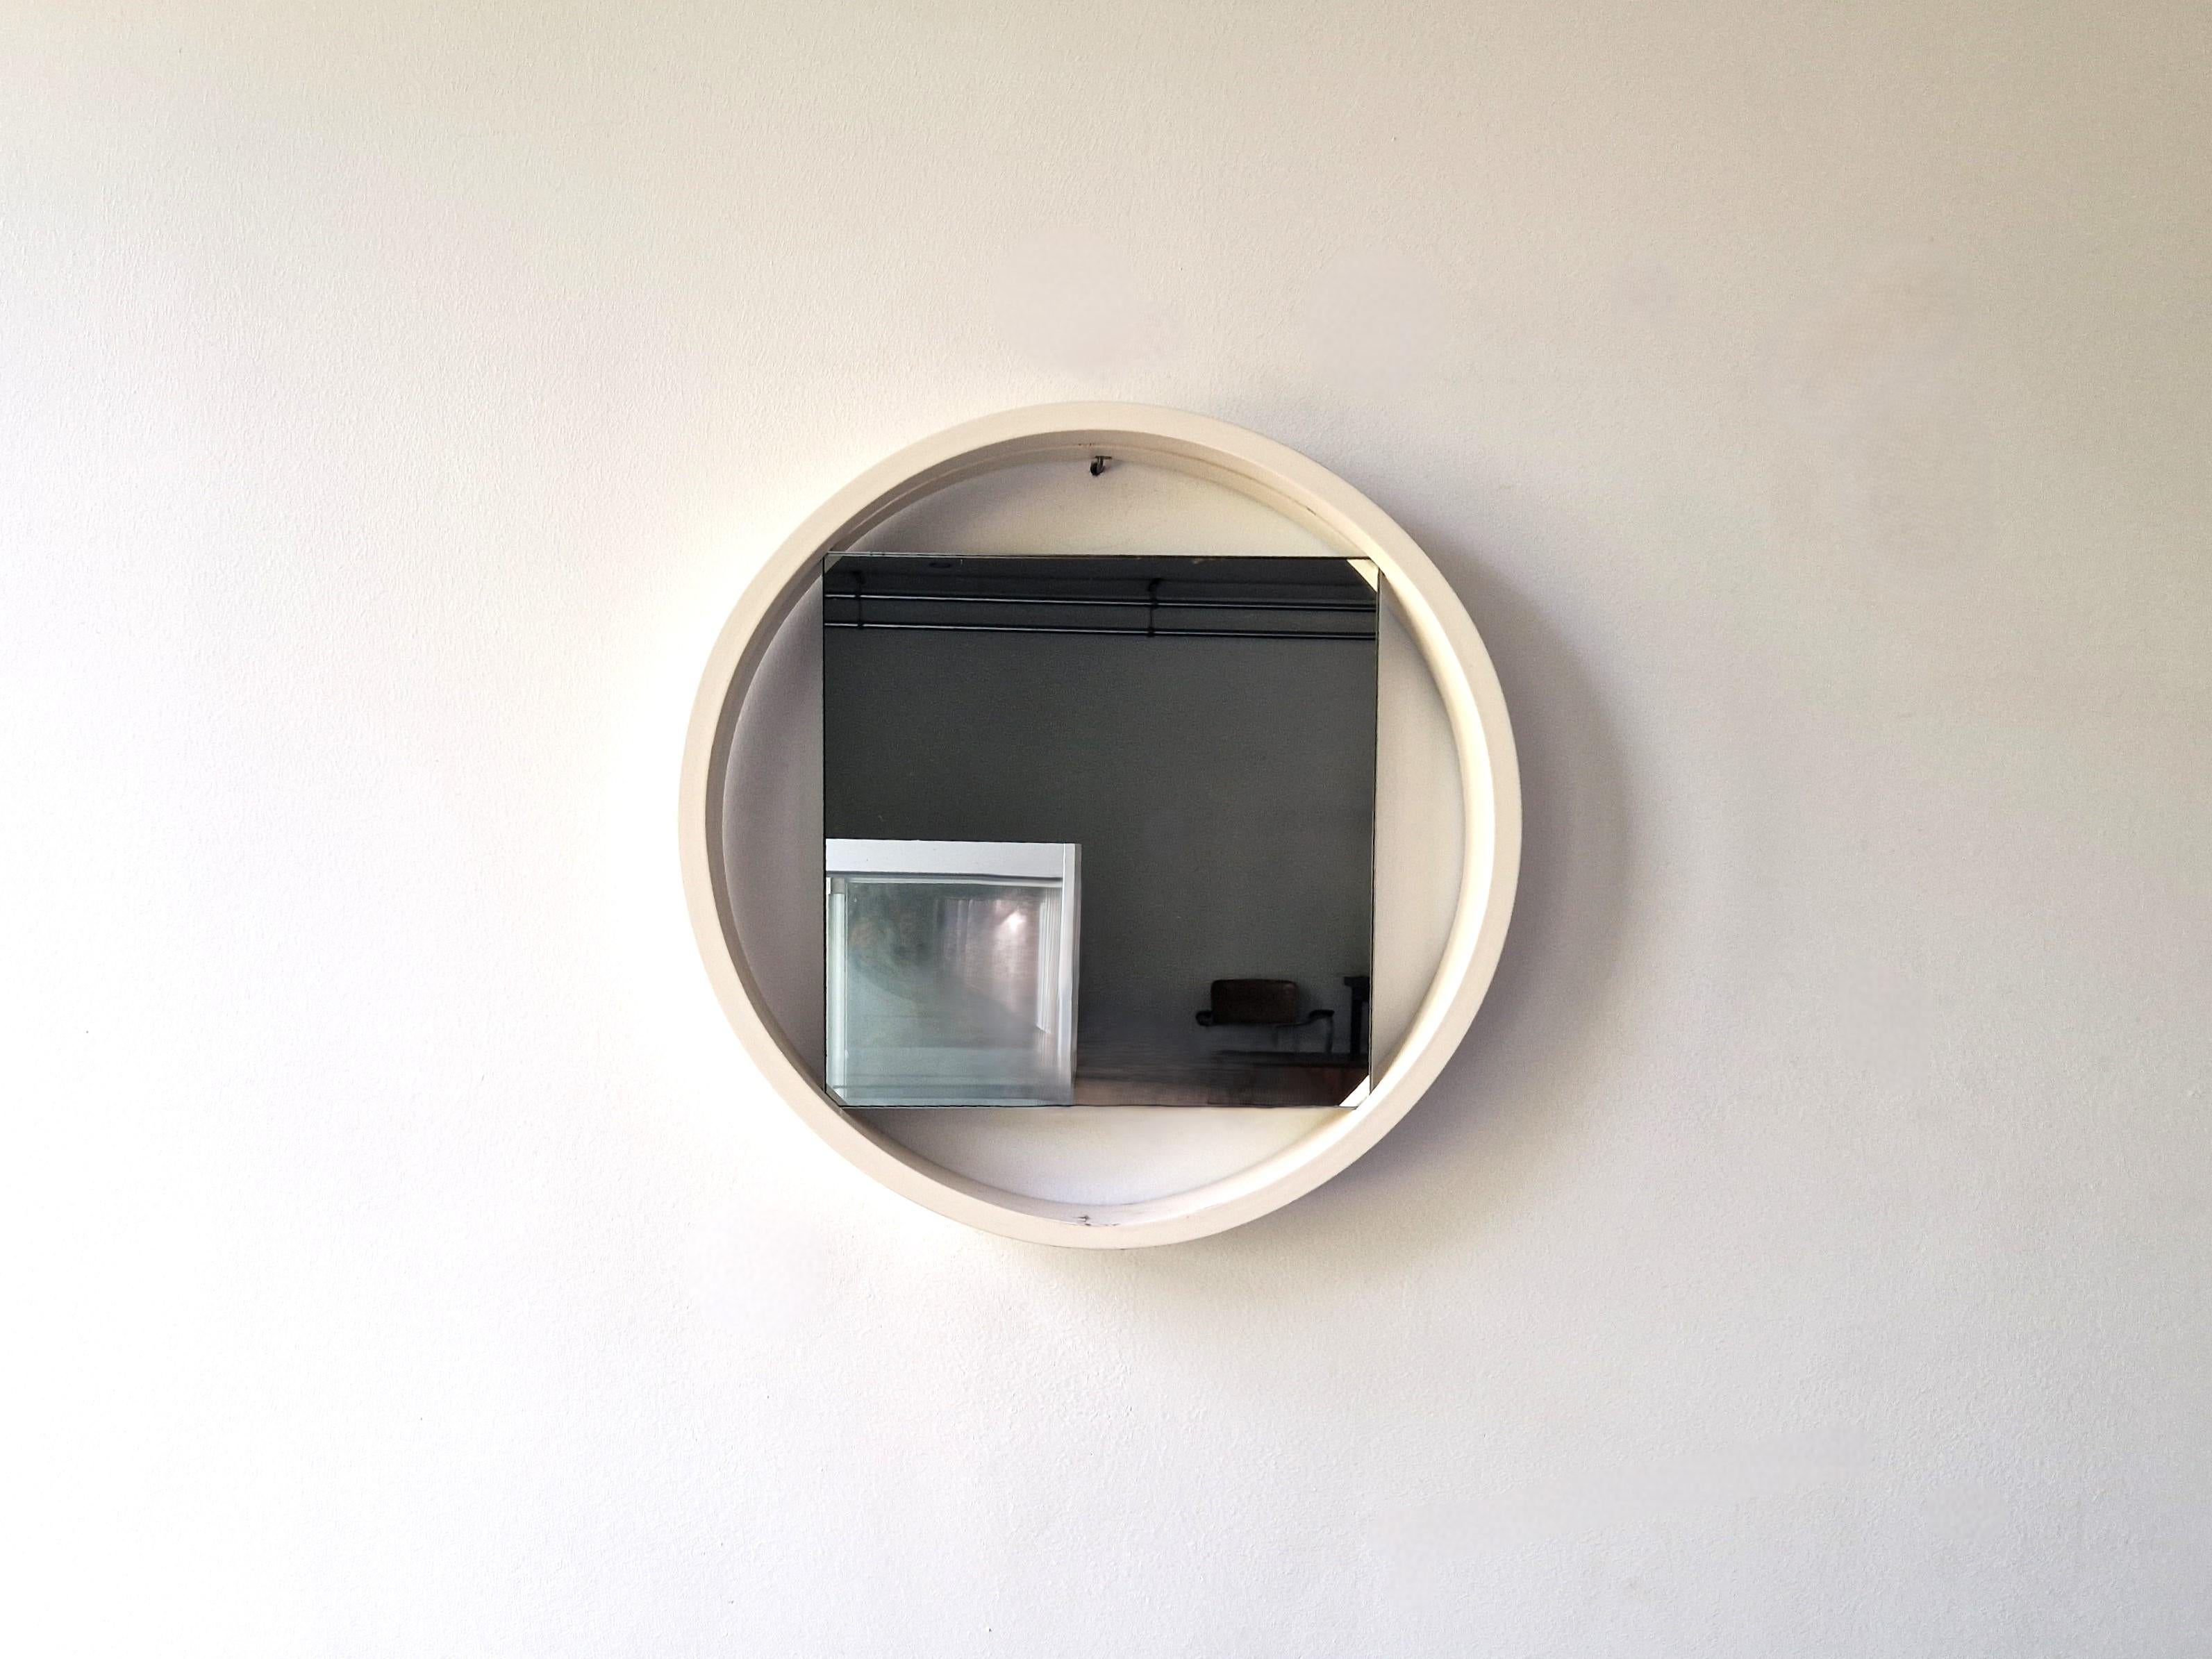 Dieser Spiegel, Modell DZ84, wurde von Benno Premsela für 't Spectrum entworfen. Ein minimalistisches und sehr aufregendes Design. Der Kontrast und die Verspieltheit des runden Rahmens und des quadratischen Spiegels machen ihn zu einer Ikone des